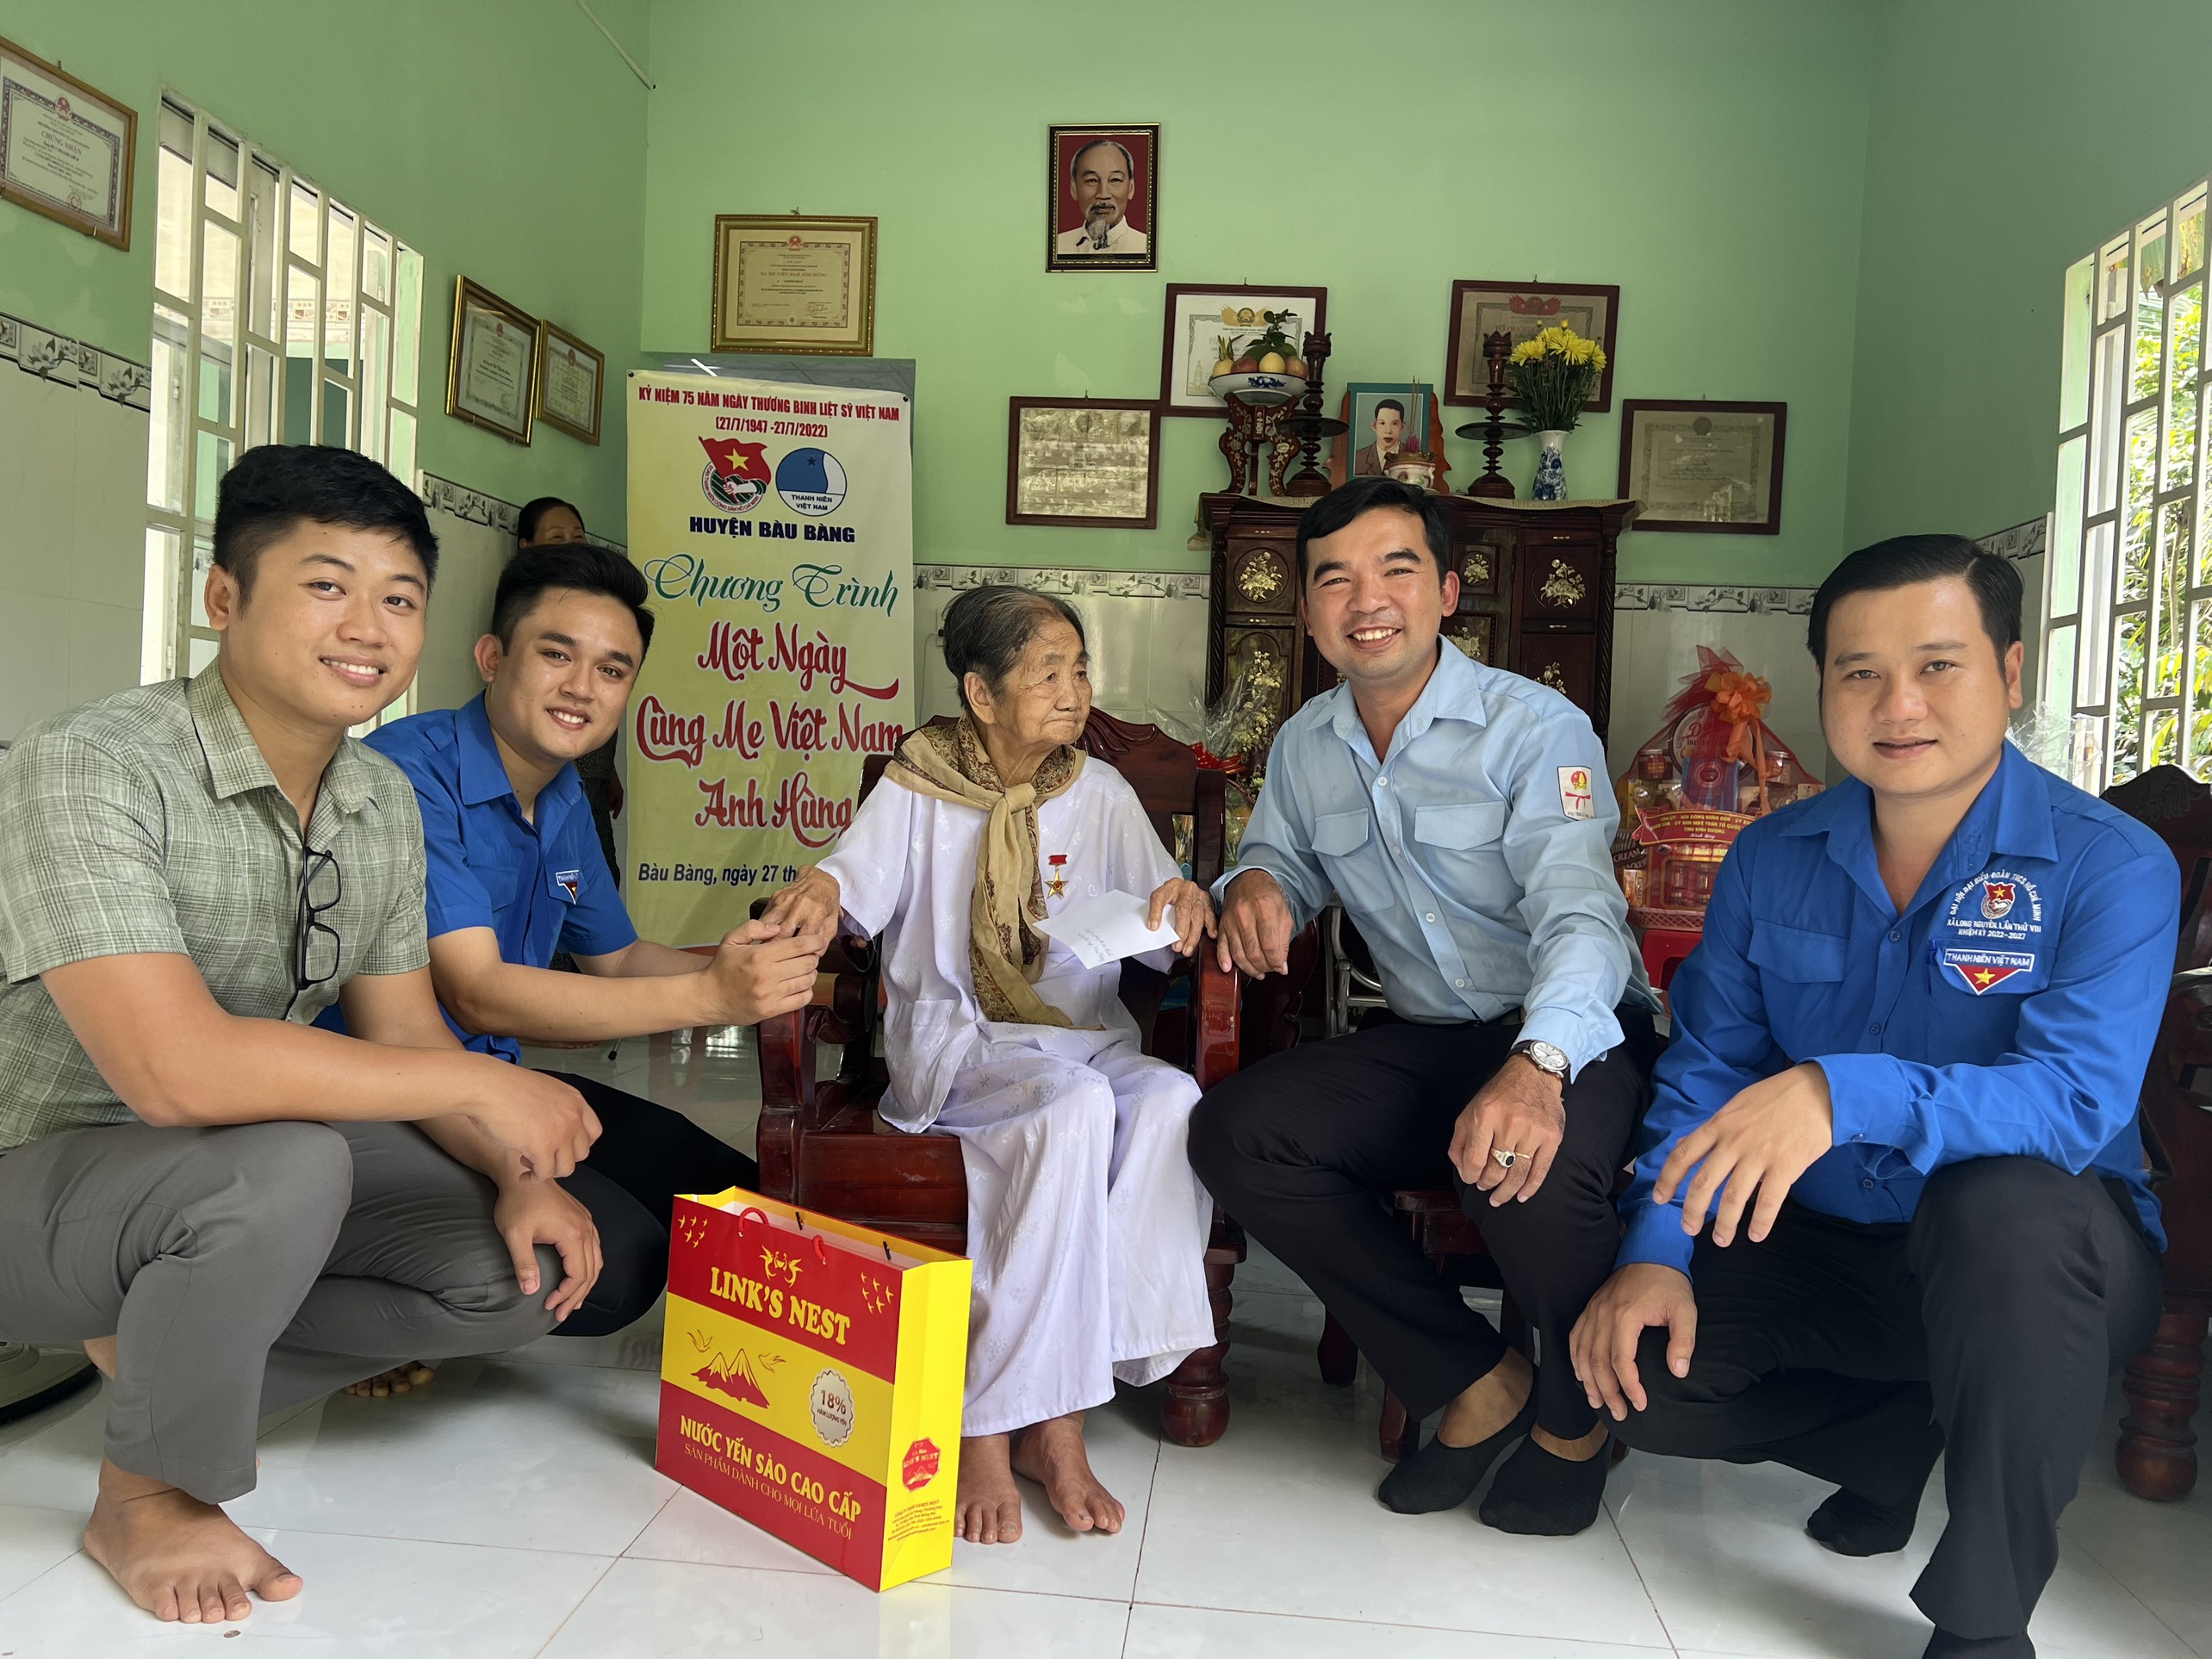 Tuổi trẻ Bàu Bàng tổ chức chương trình “Một ngày cùng Mẹ Việt Nam Anh hùng” nhân dịp kỷ niệm 75 năm Ngày thương binh – Liệt sỹ (27/7/1947 – 27/7/2022)